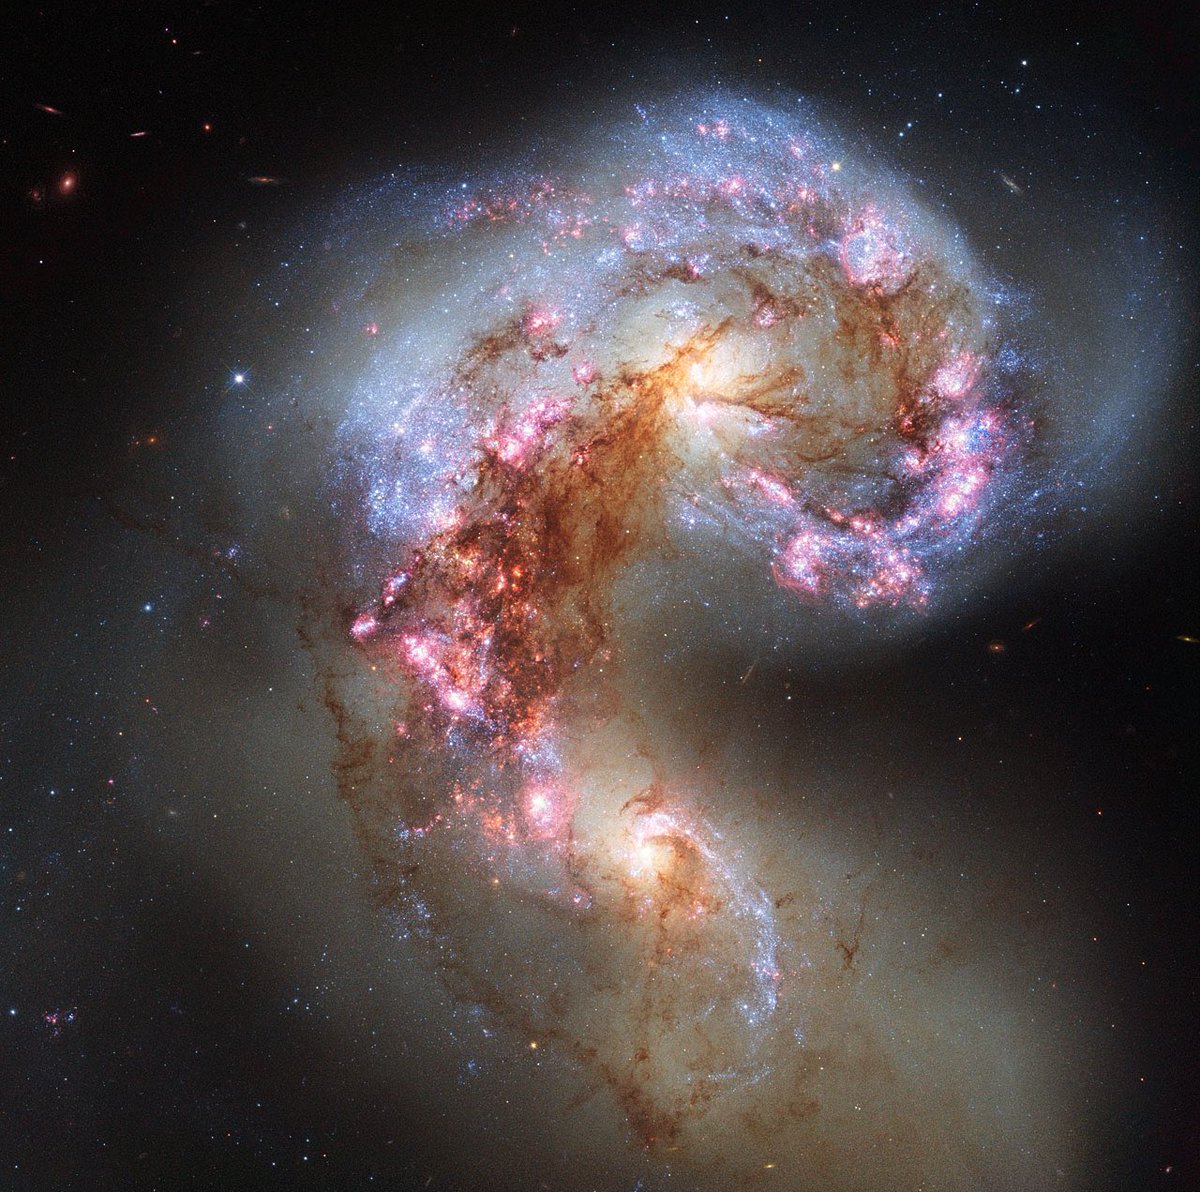 Só para lembrar que o telescópio Hubble está de aniversário de 34 anos, com 4 das suas lindas imagens de galáxias. 

Todas abrigam um buraco negro supermassivo mo centro, conhecimento também  trazido pelo Hubble.

Parabéns, Hubble!

#astronomia #ciencia #galaxias #universo